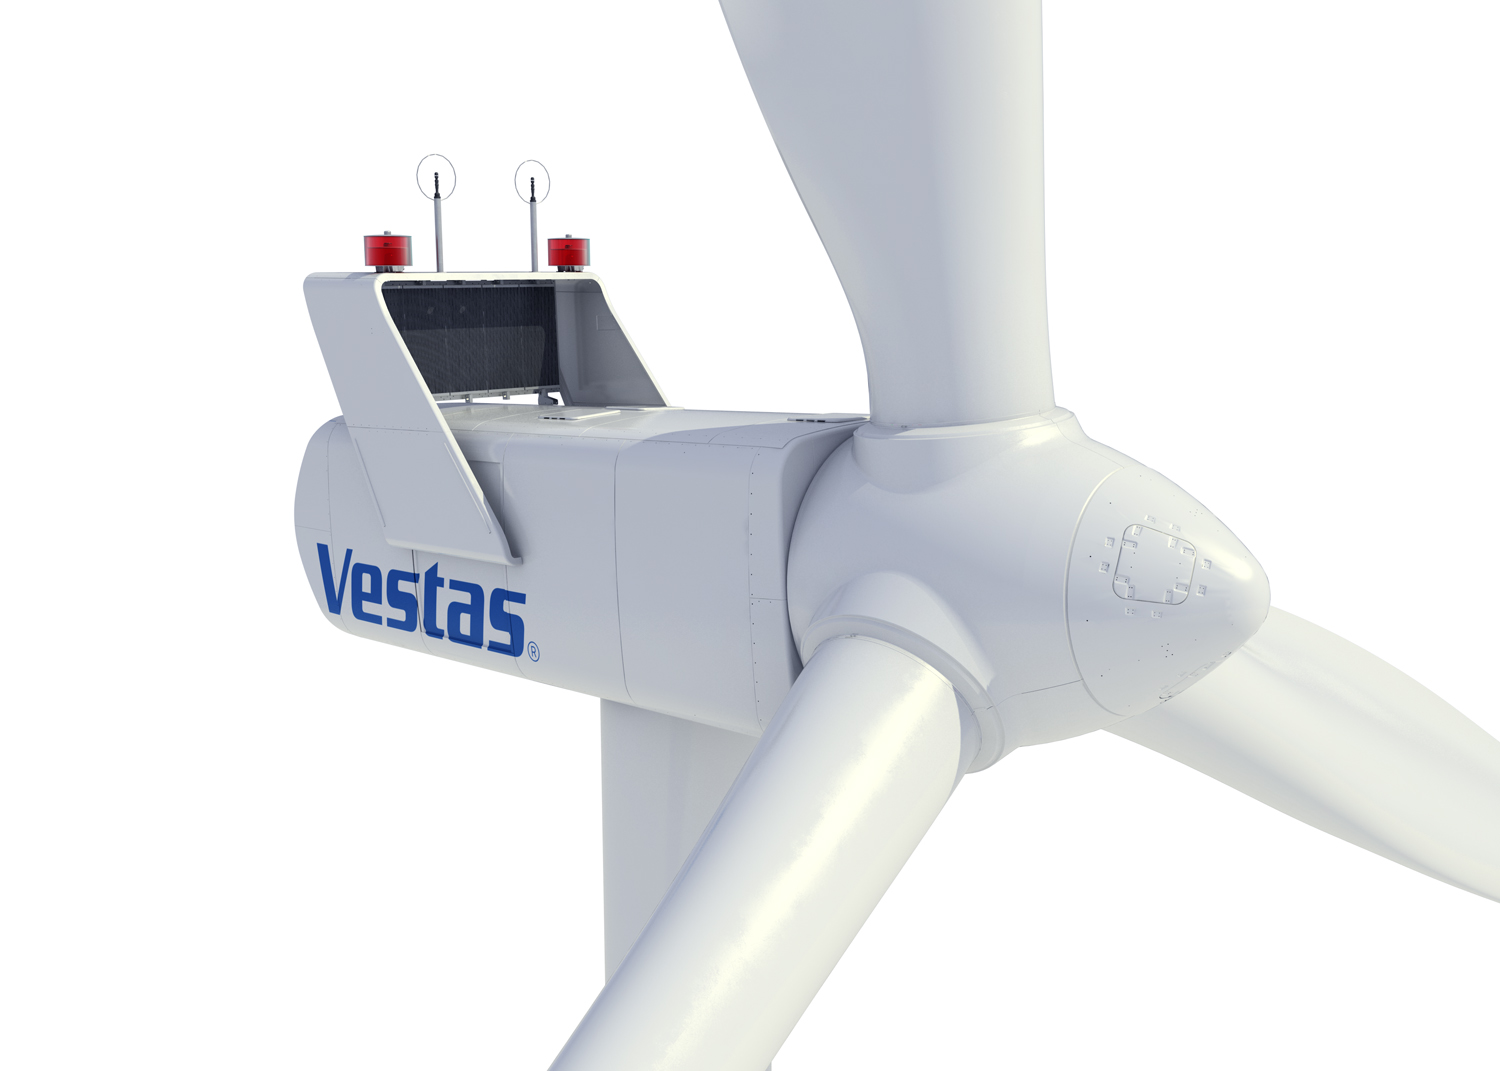 La eólica Vestas introduce los aerogeneradores EnVentus